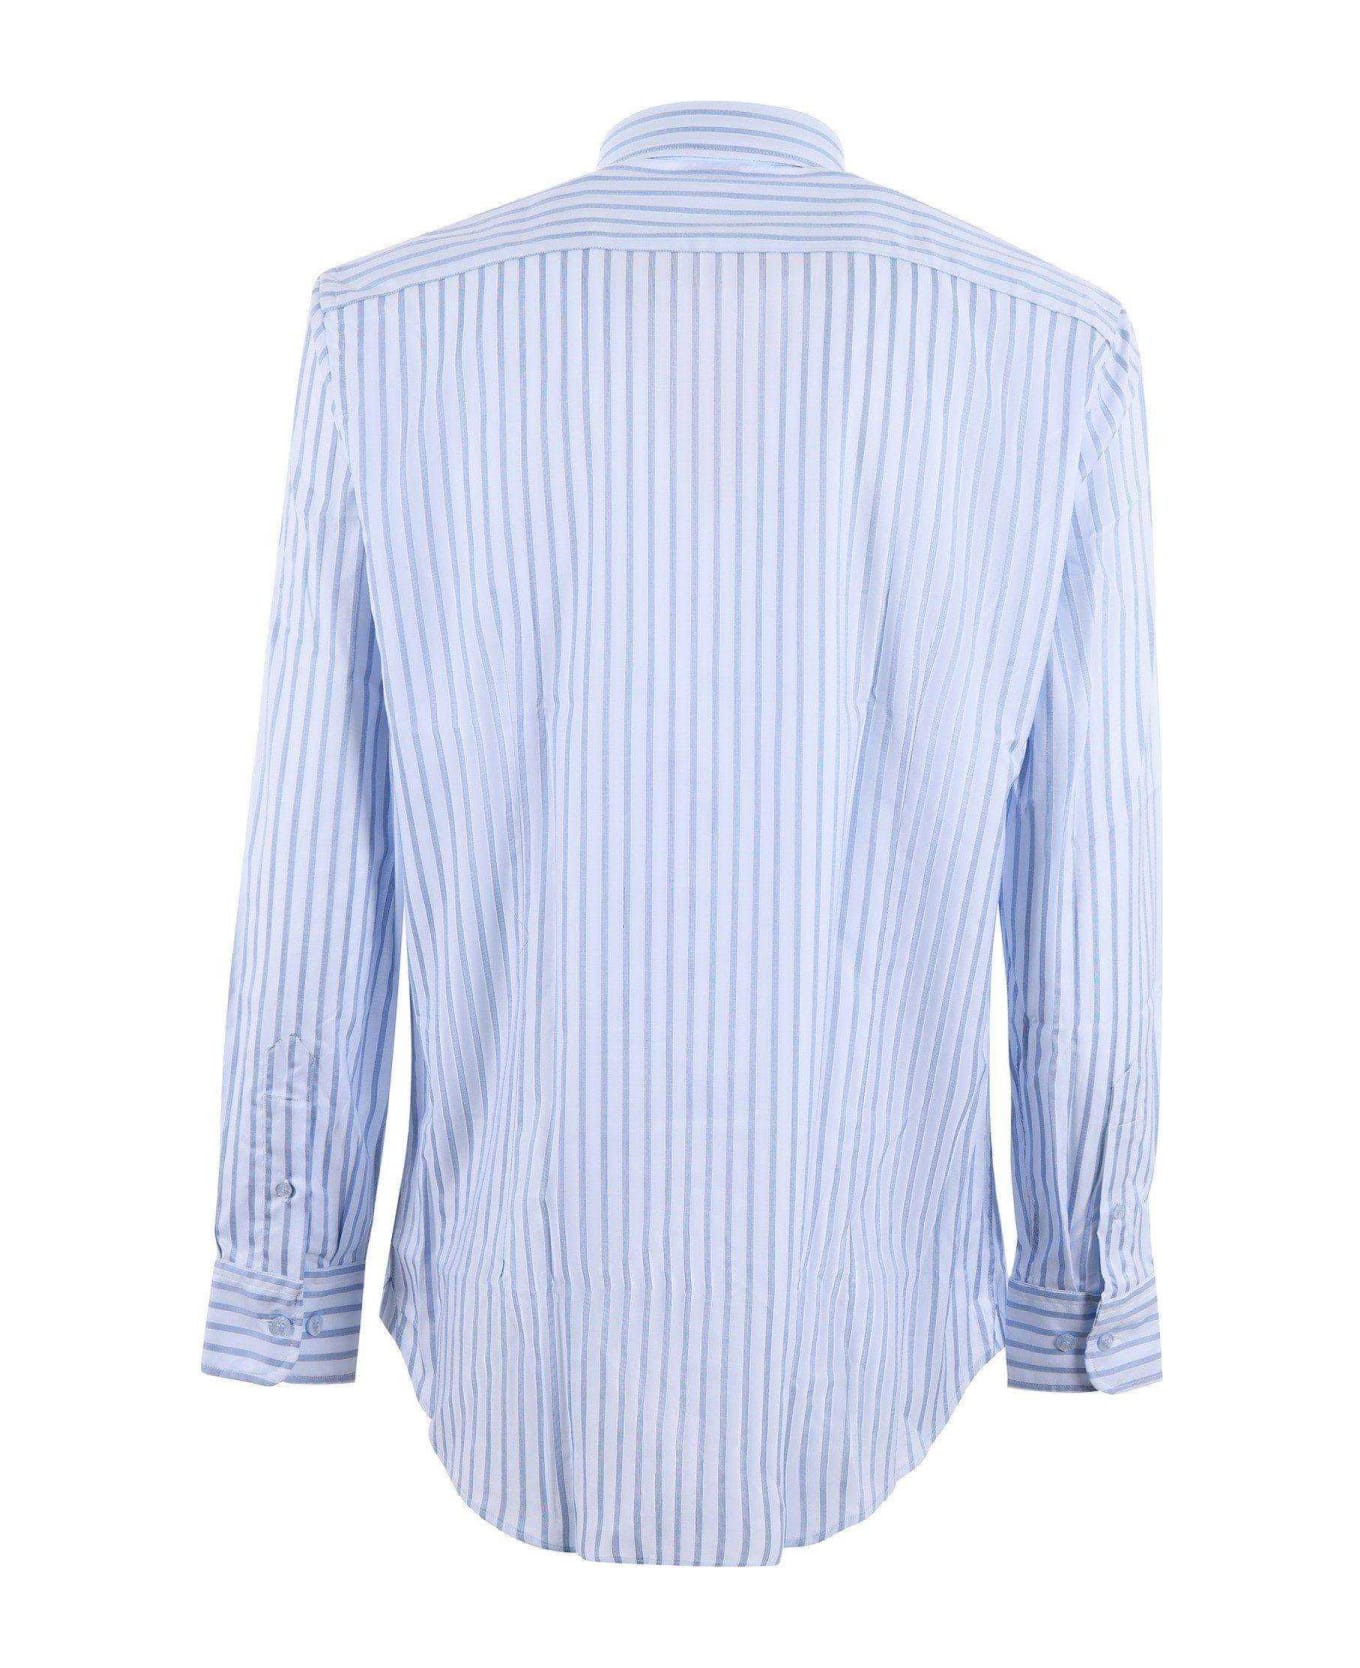 Etro White\/light Blue Striped Long Sleeved Shirt - Celeste